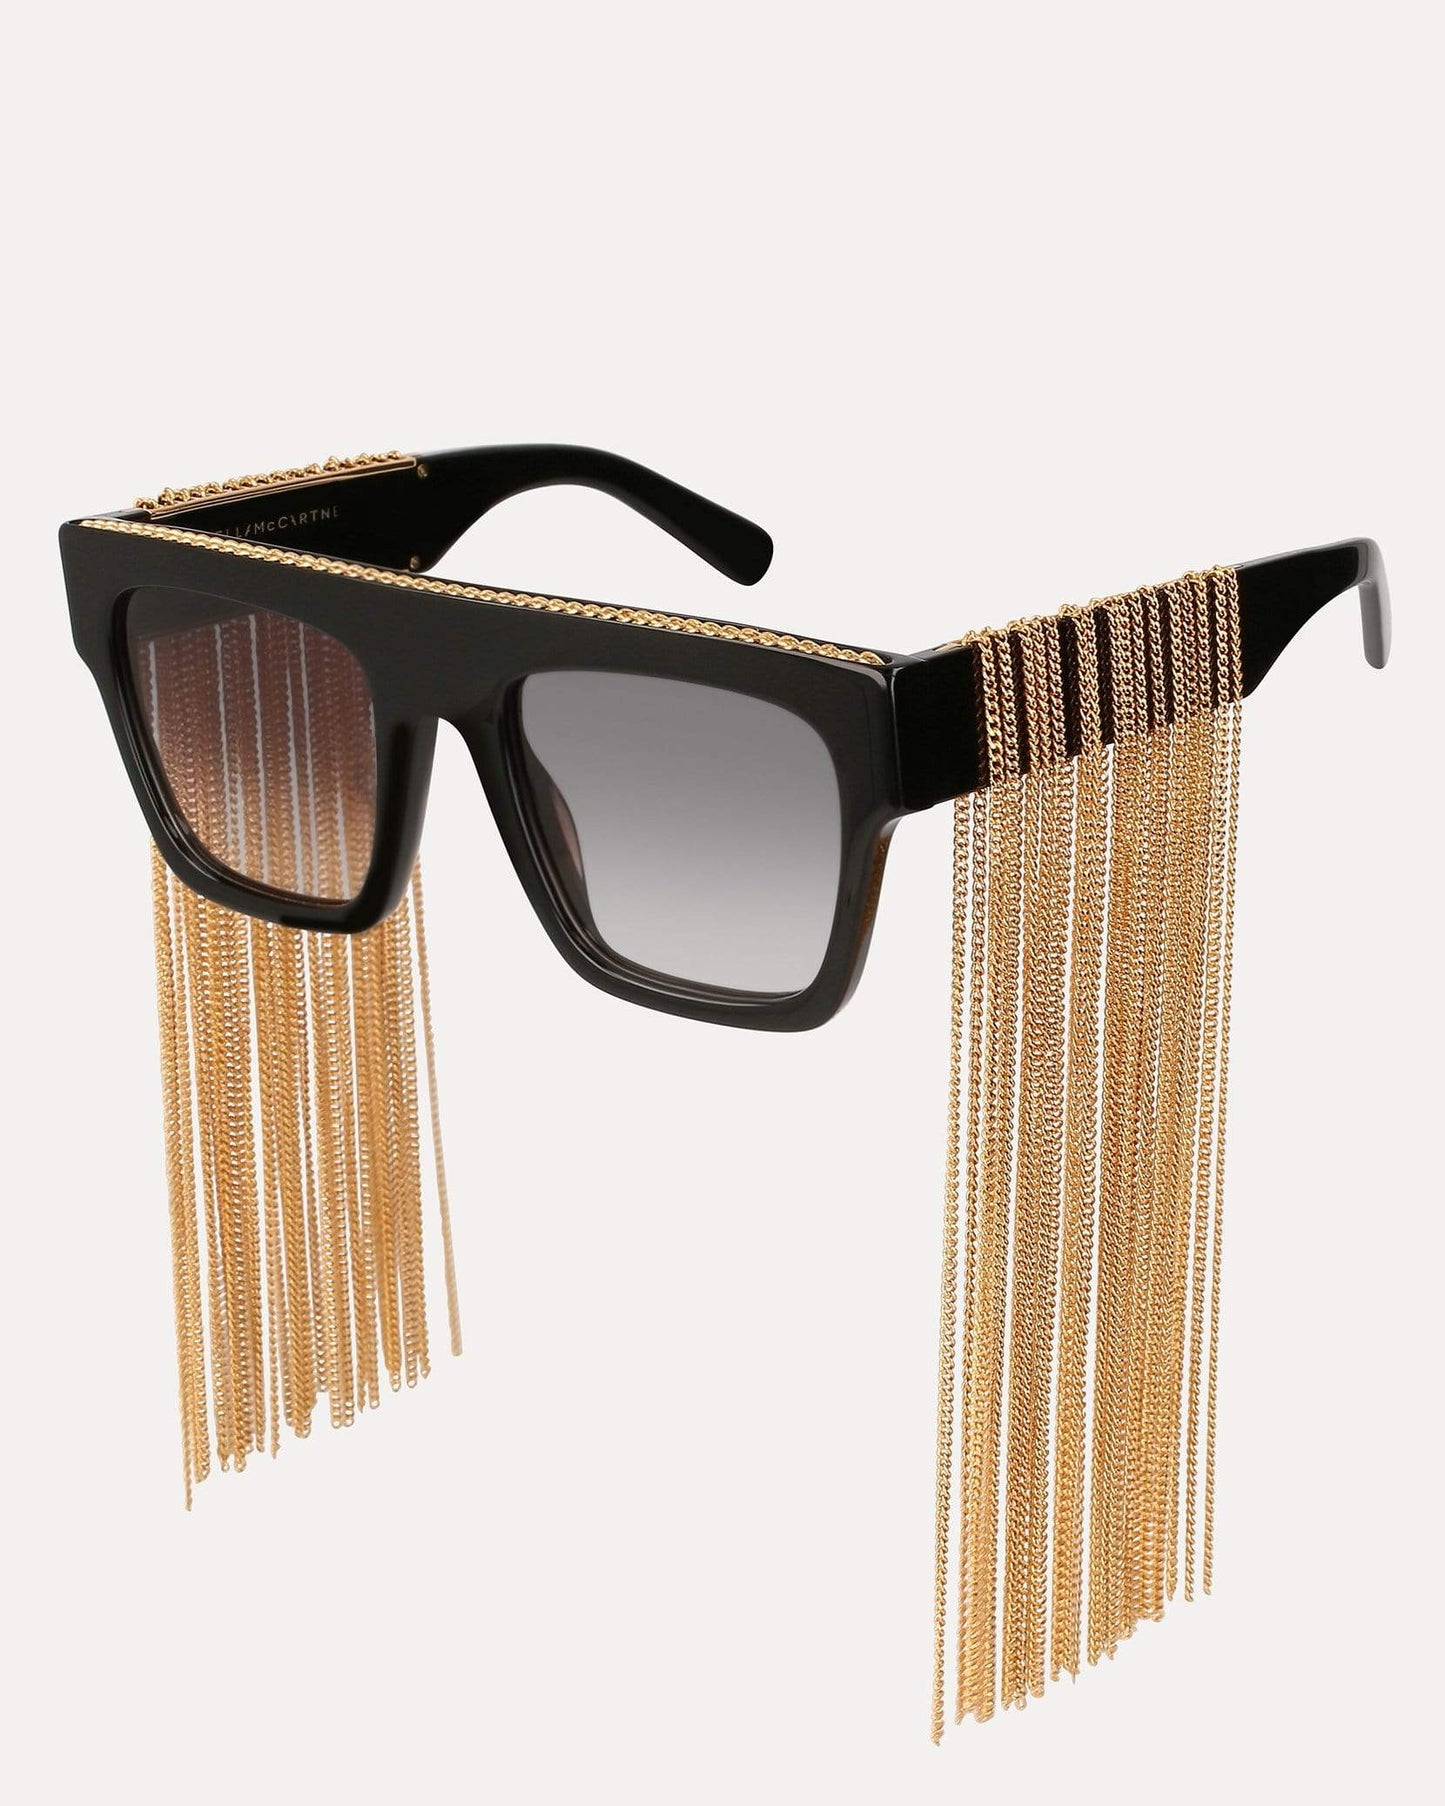 Stella McCartney Eyewear Black Fringe Sunglasses